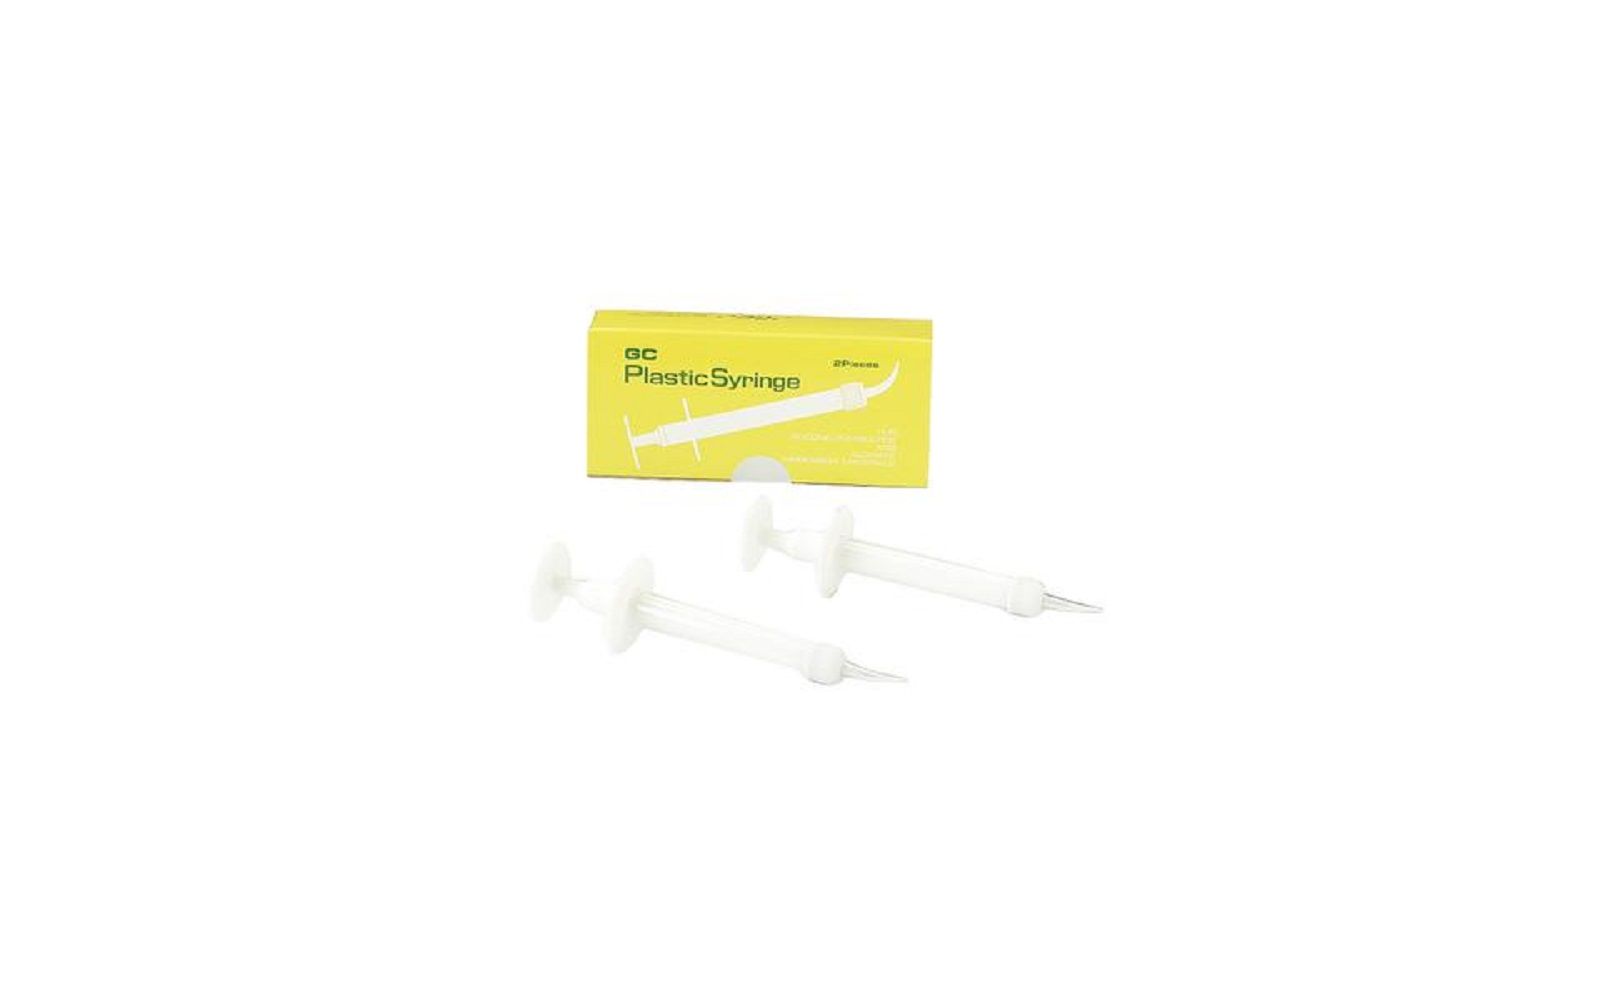 Gc plastic syringe kit, 2/pkg